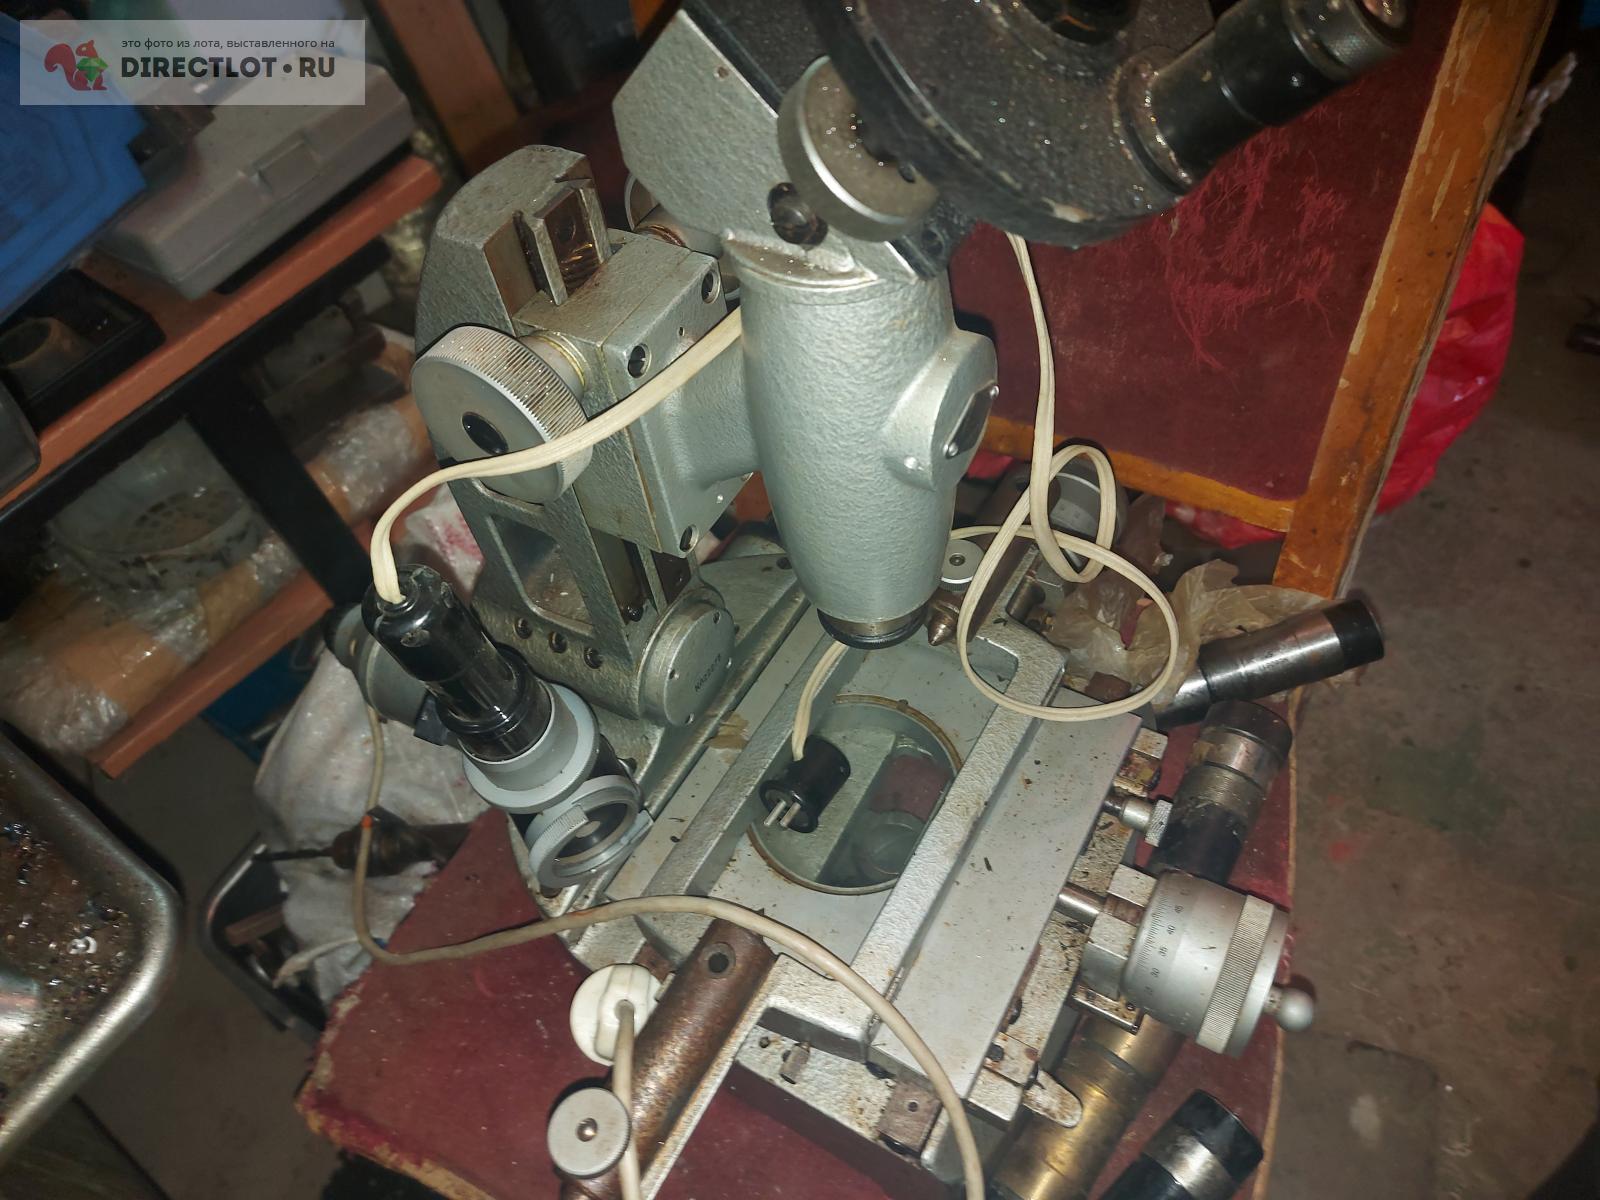 Микроскоп малый инструментальный - ММИ-2  в Саратове цена 30000 Р .